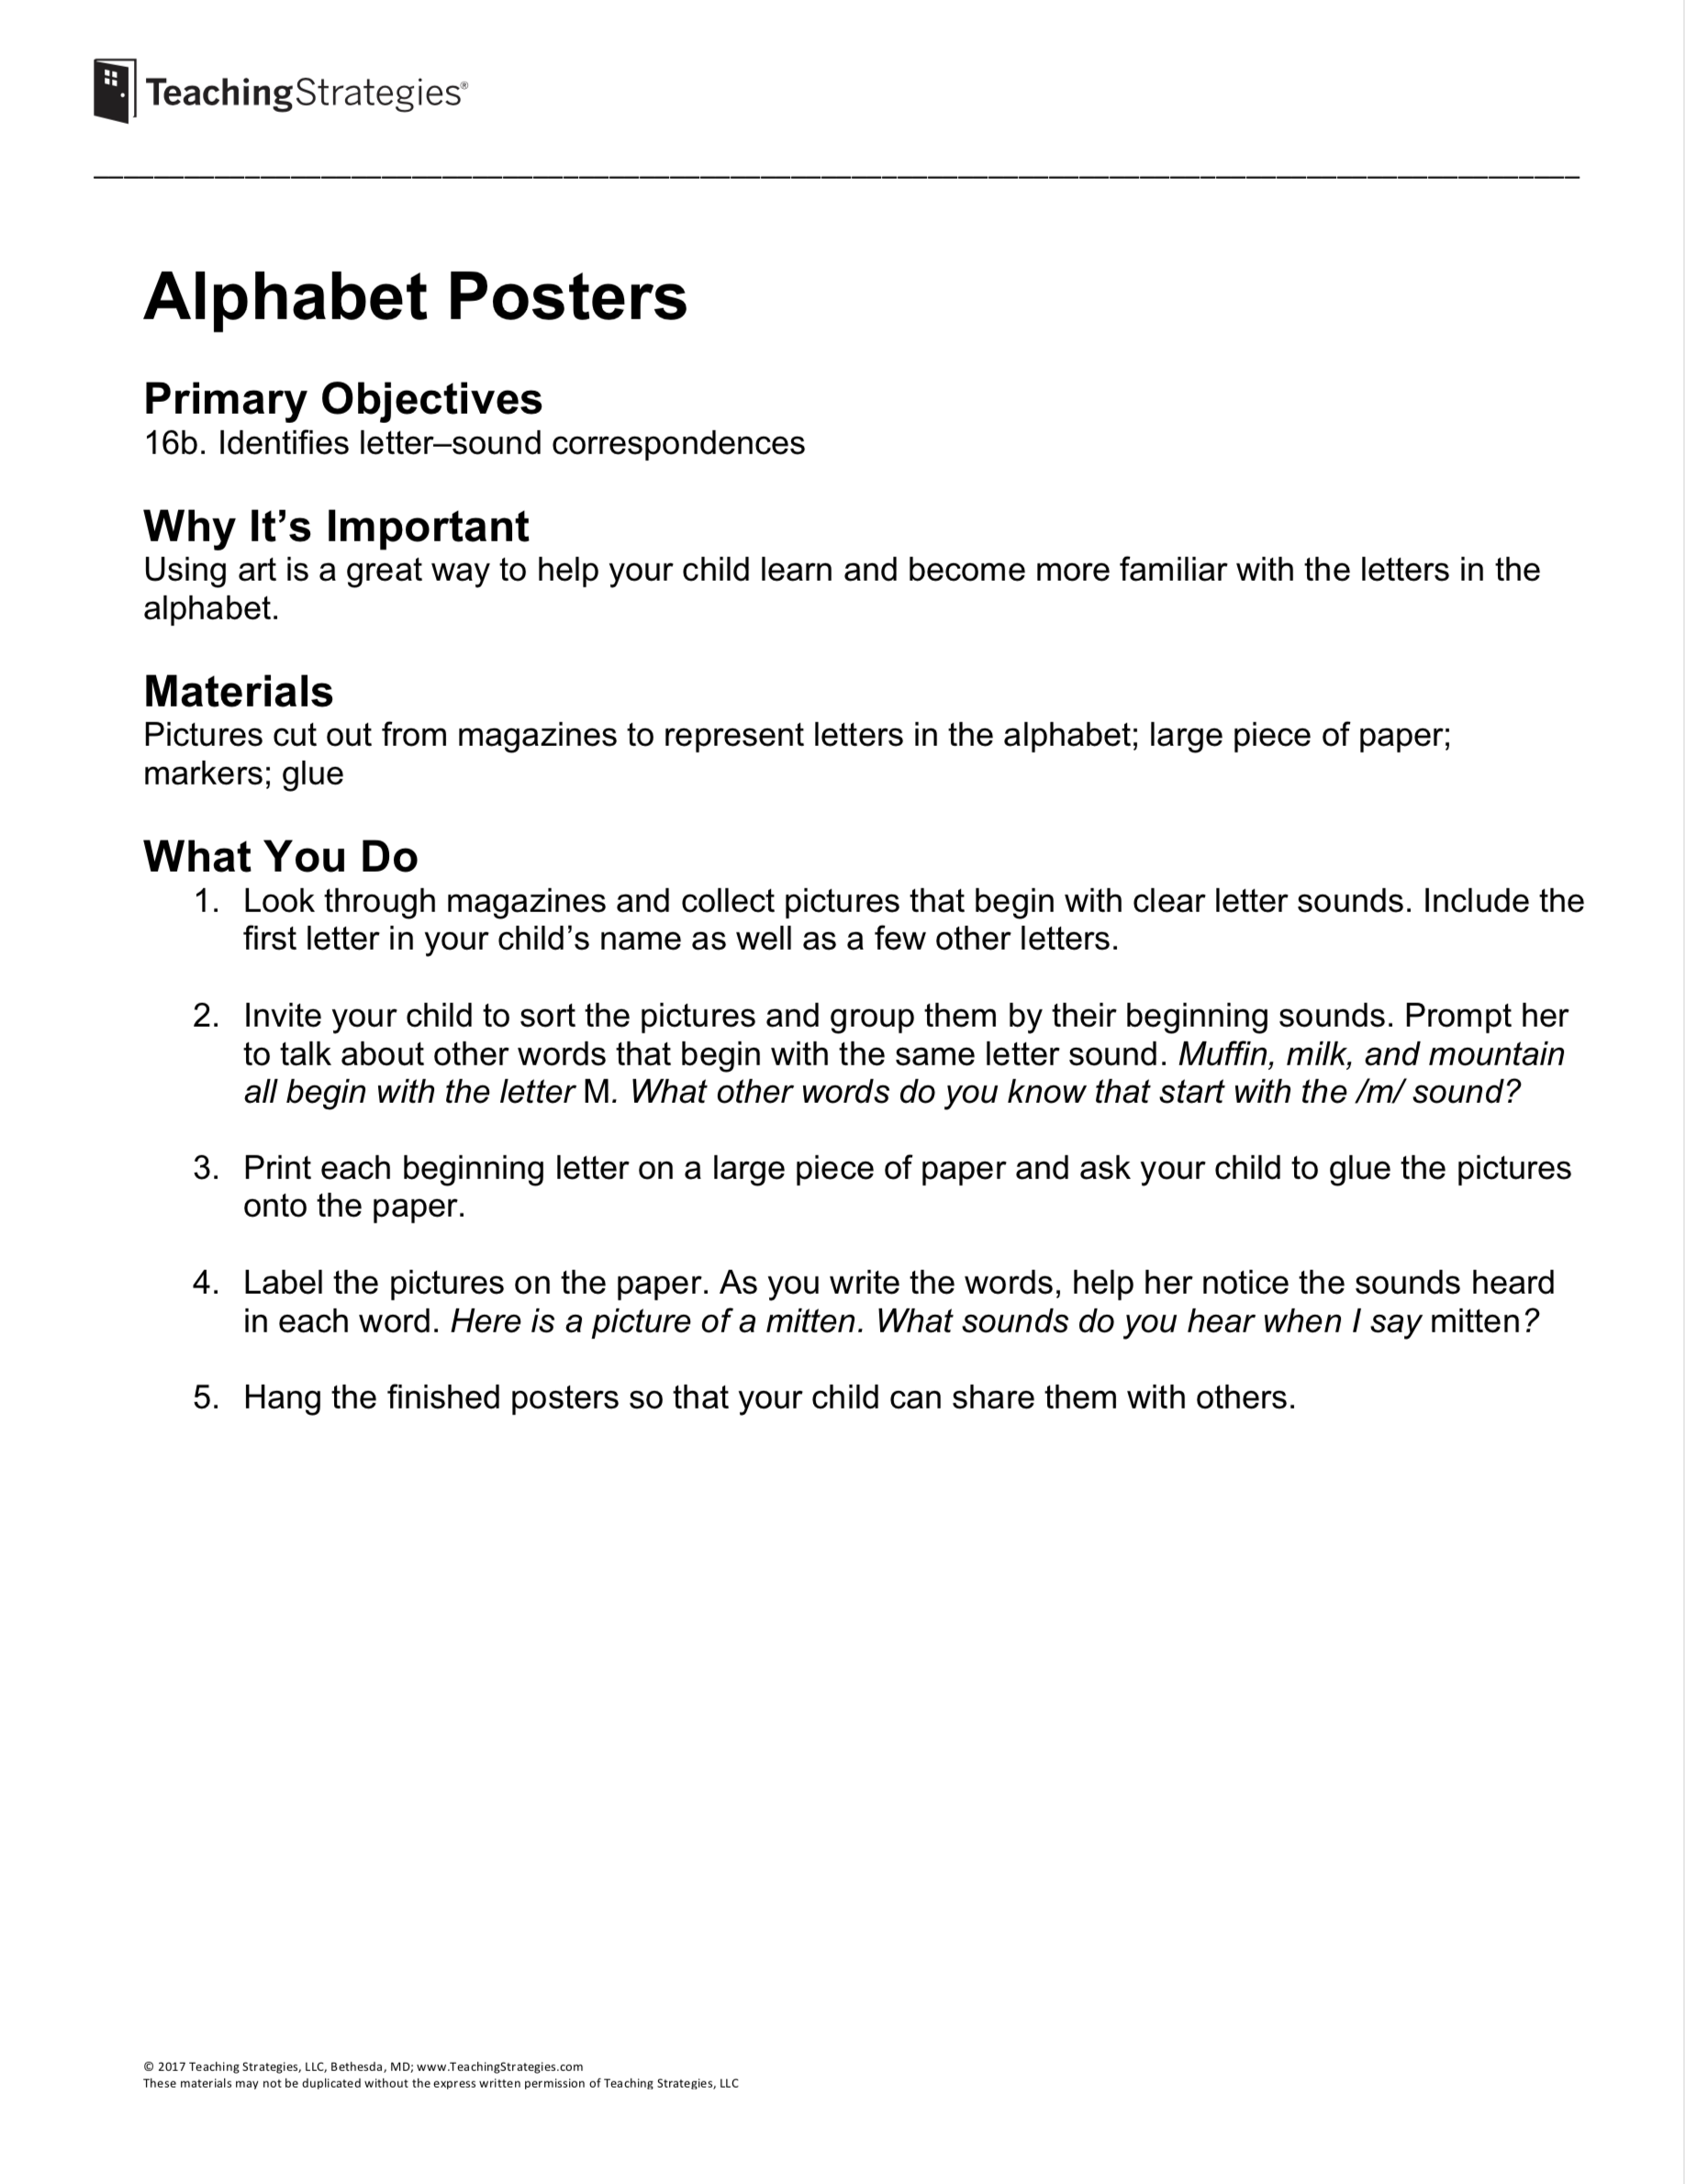 Alphabet Posters Preschool Resources